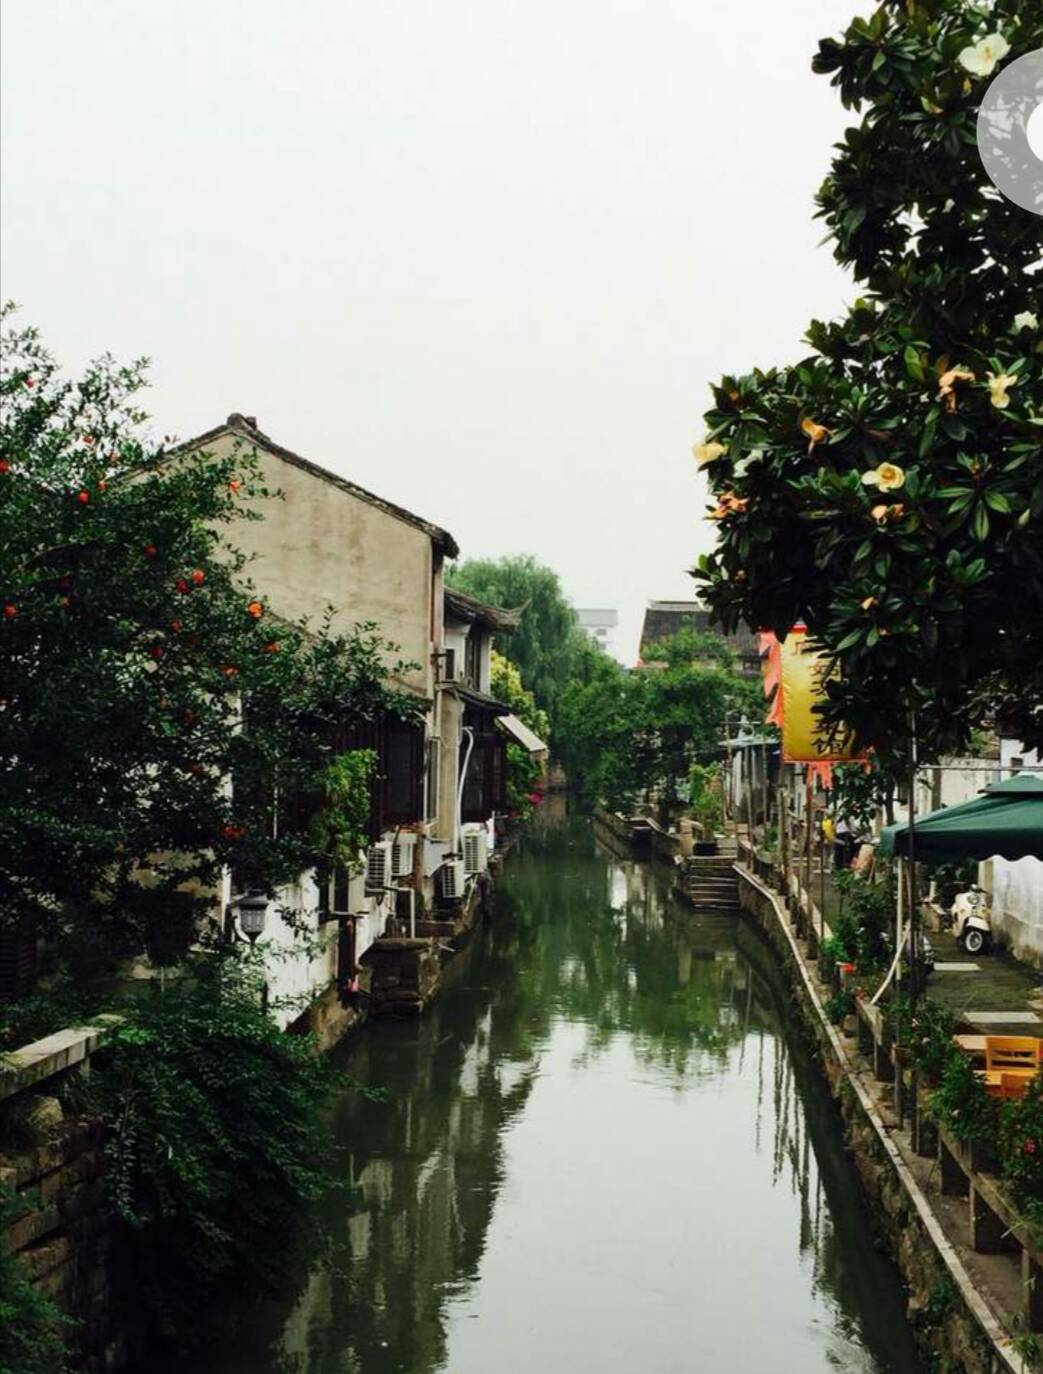 平江路算是苏州保存得最完好的古街了，与观前街一巷之隔，但其清静古朴的生